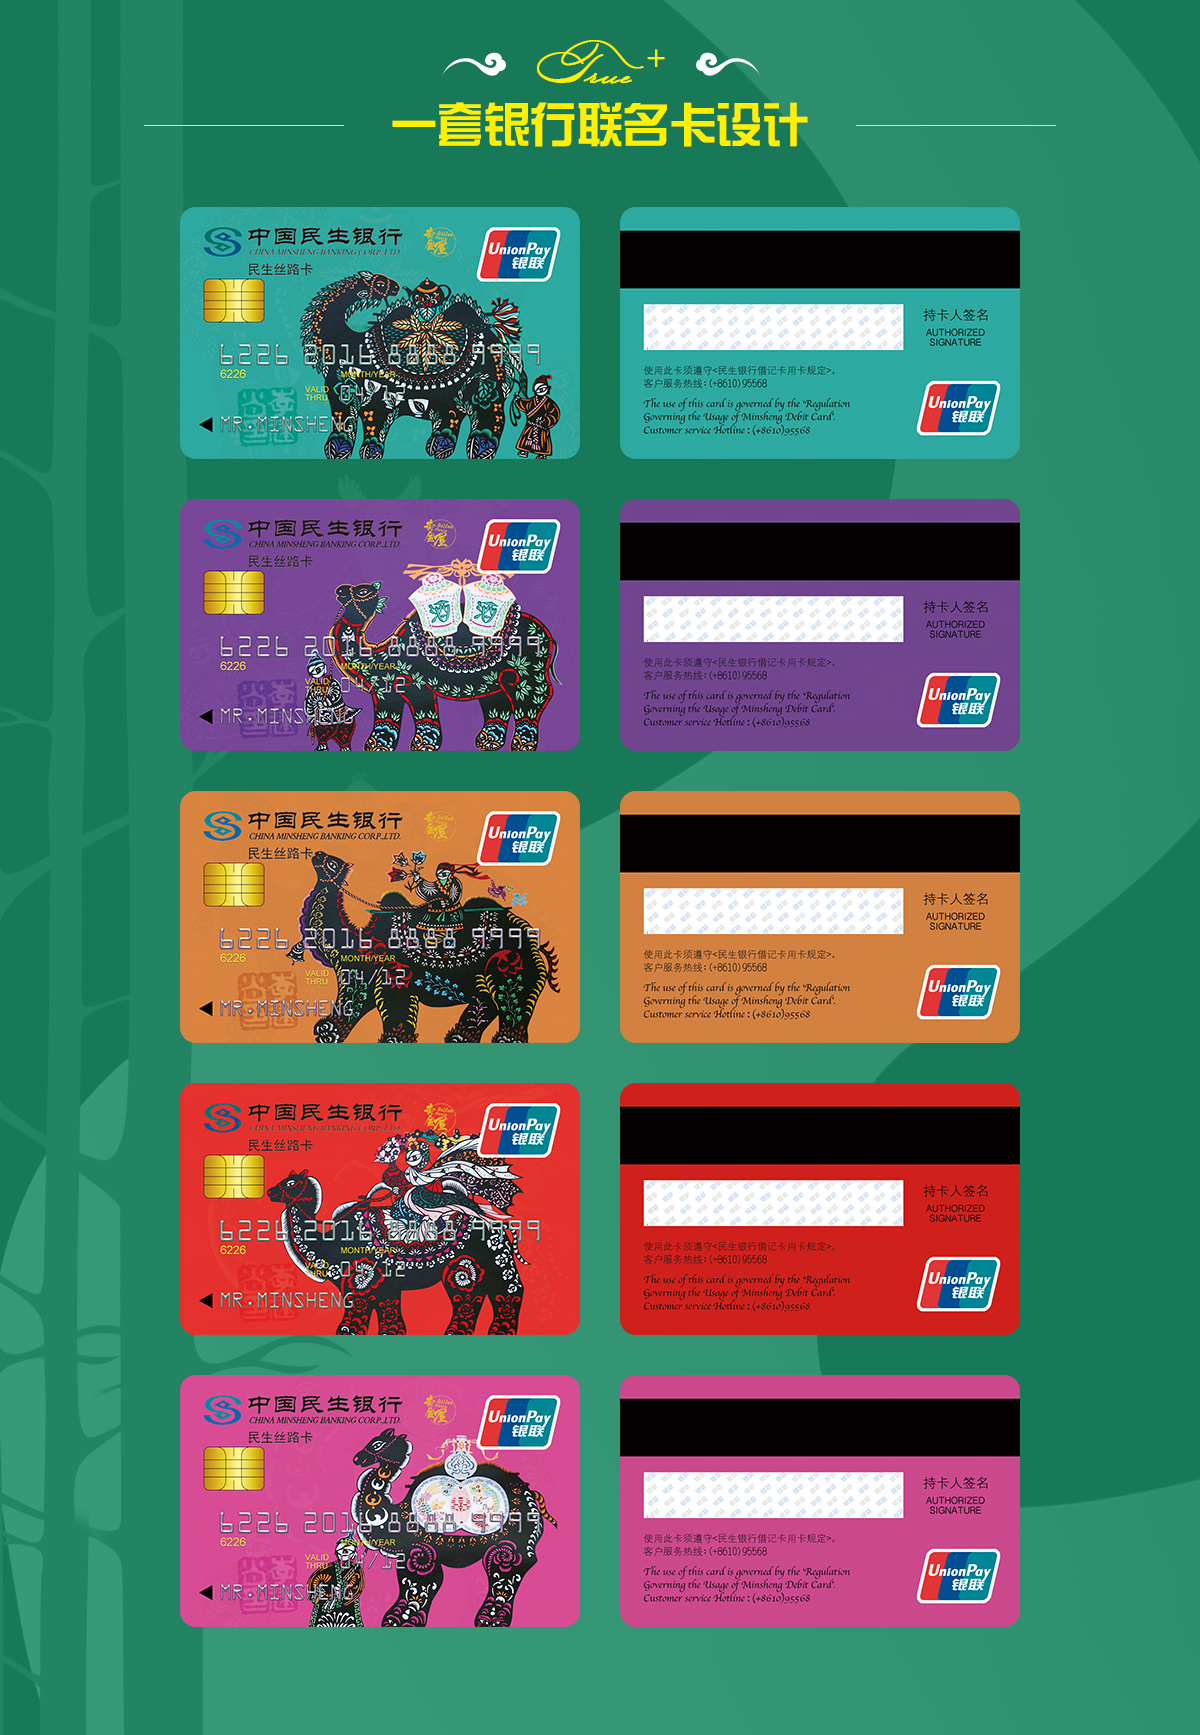 银行卡卡面设计 比赛图片